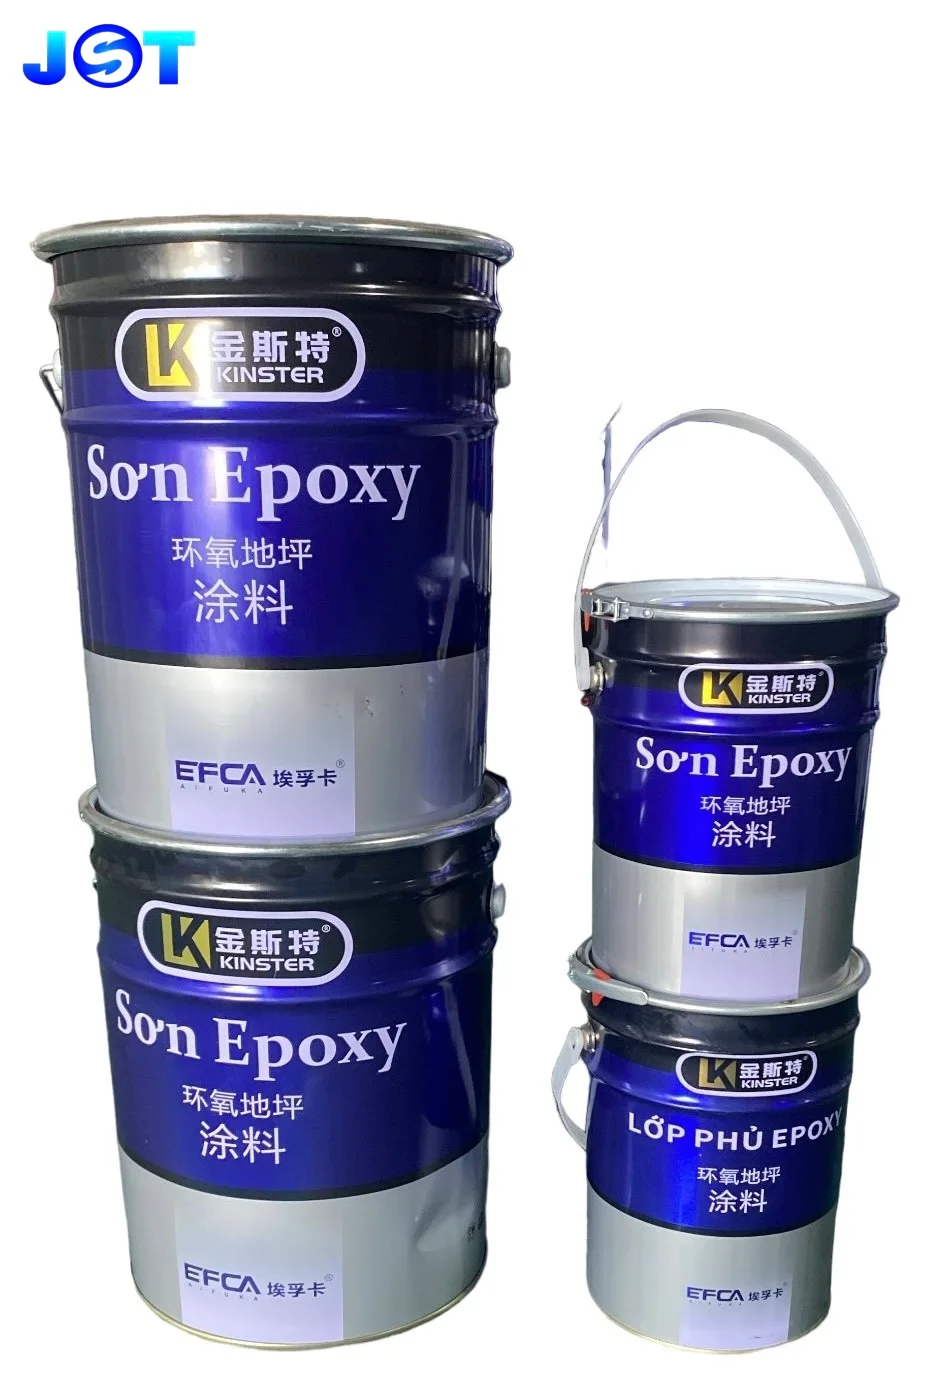 giá 1 thùng sơn epoxy